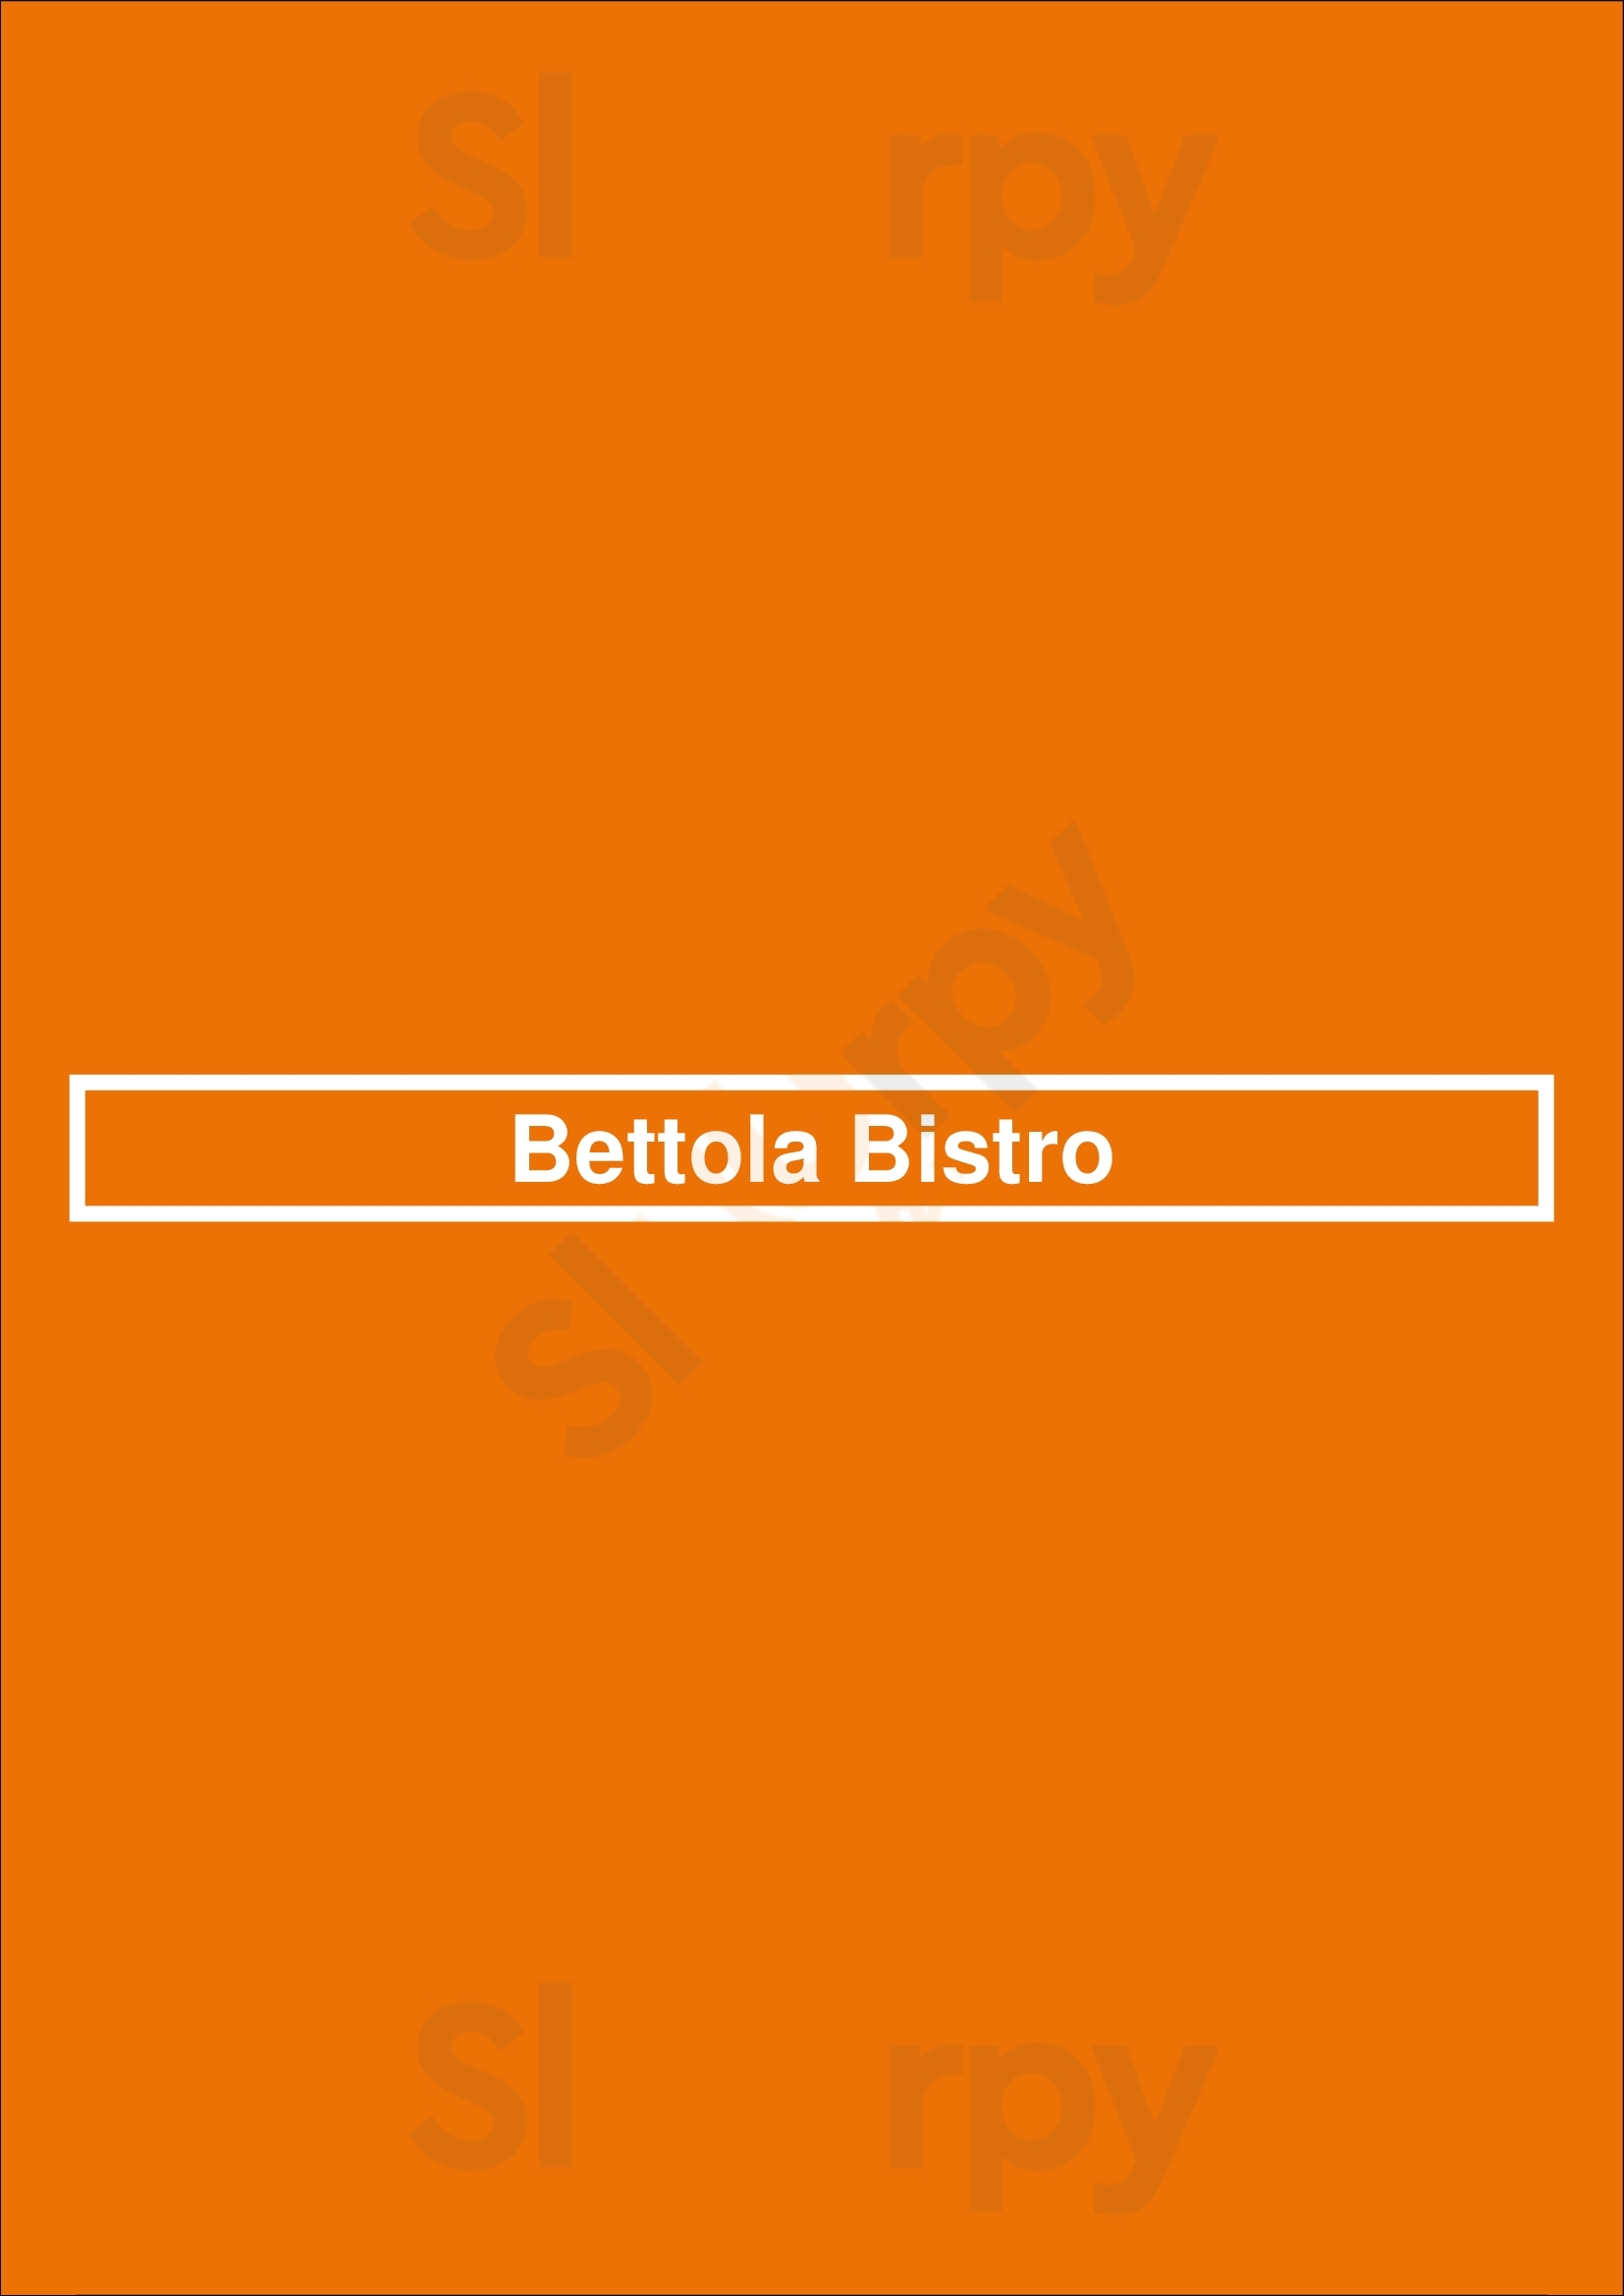 Bettola Bistro Aurora Menu - 1